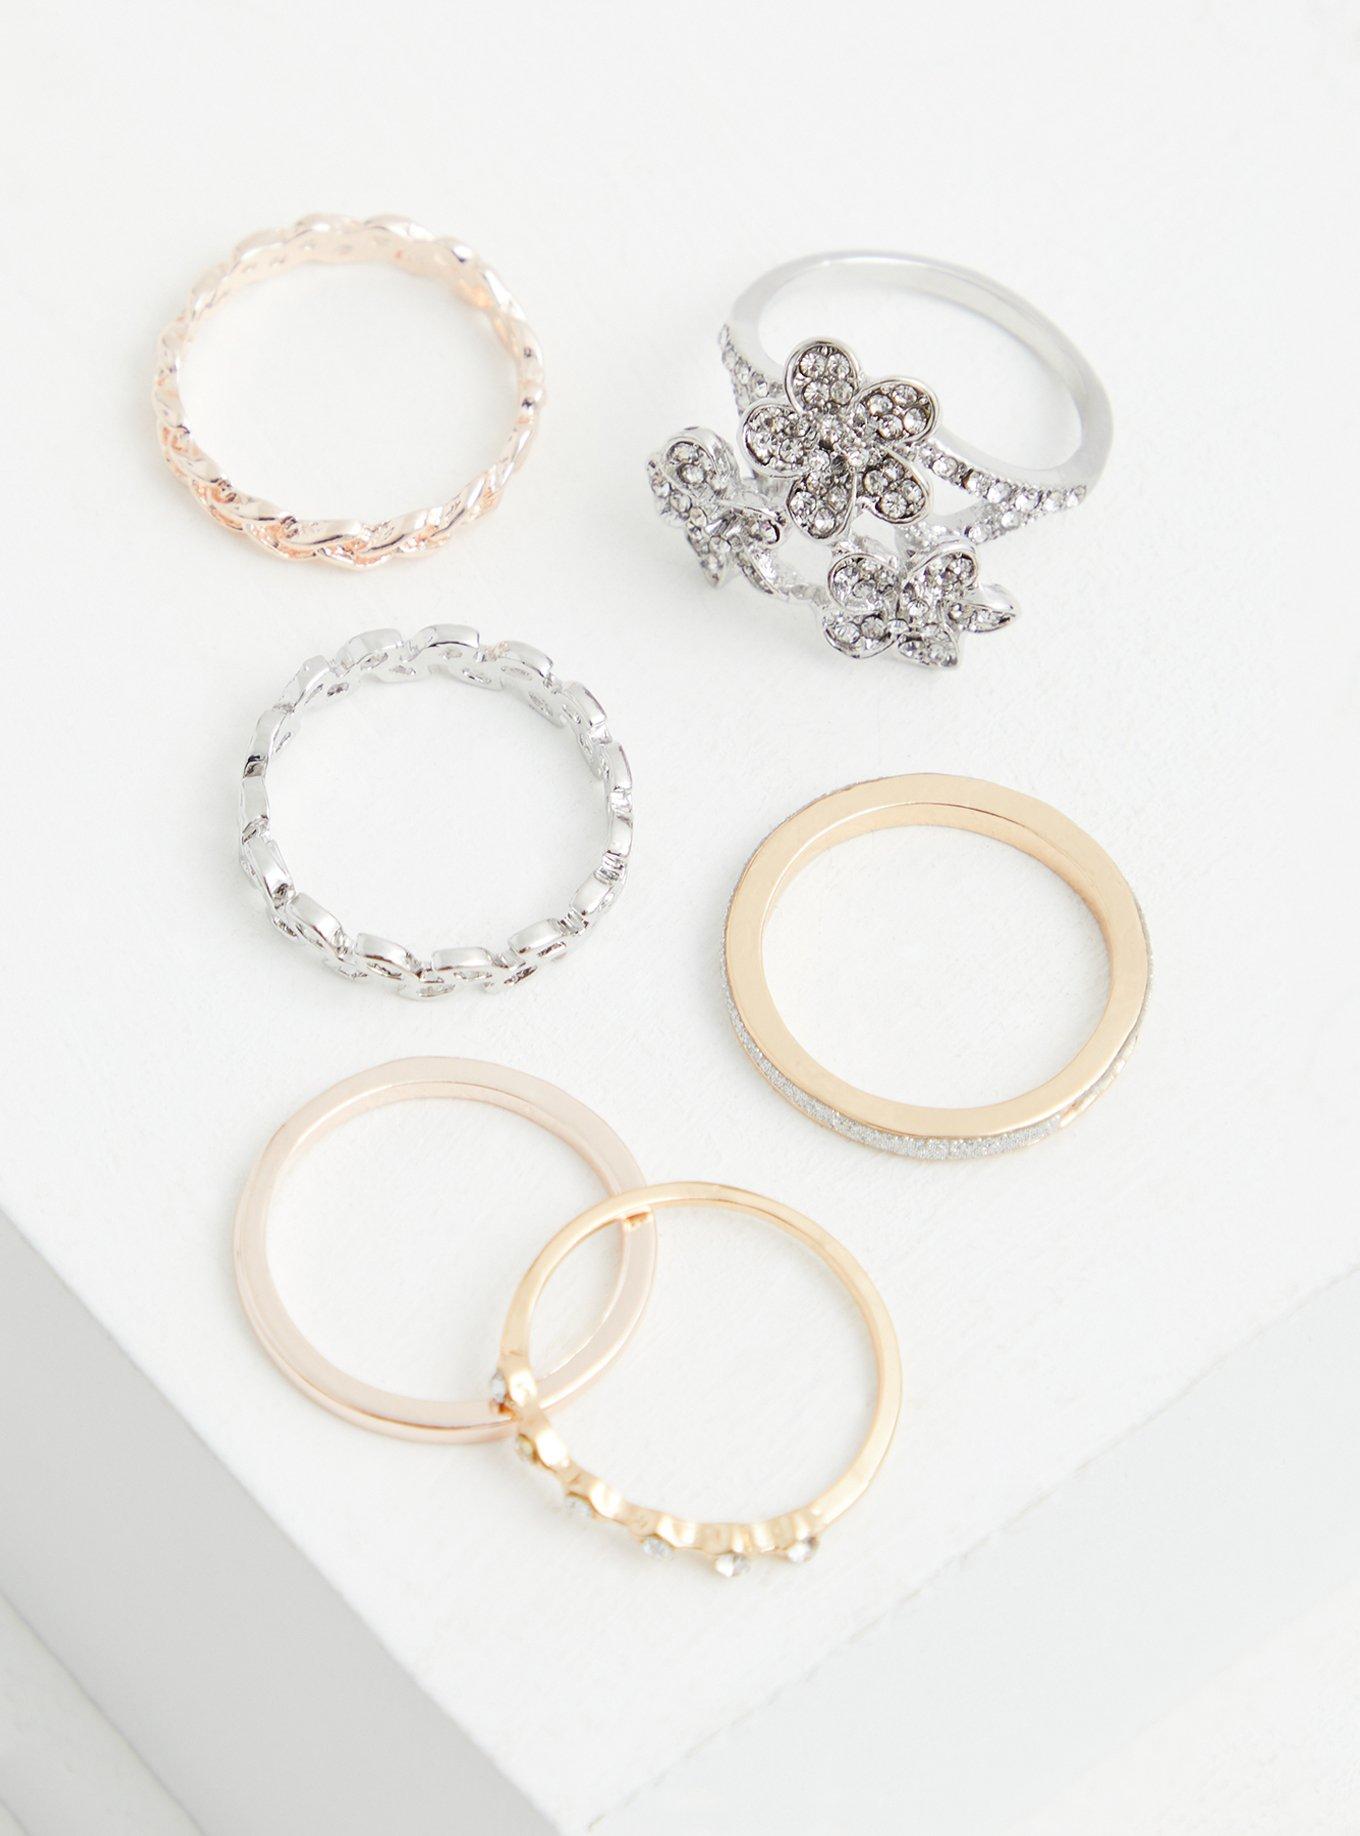 Plus Size - Mixed Metal Floral Stone Ring Set - Set of 6 - Torrid